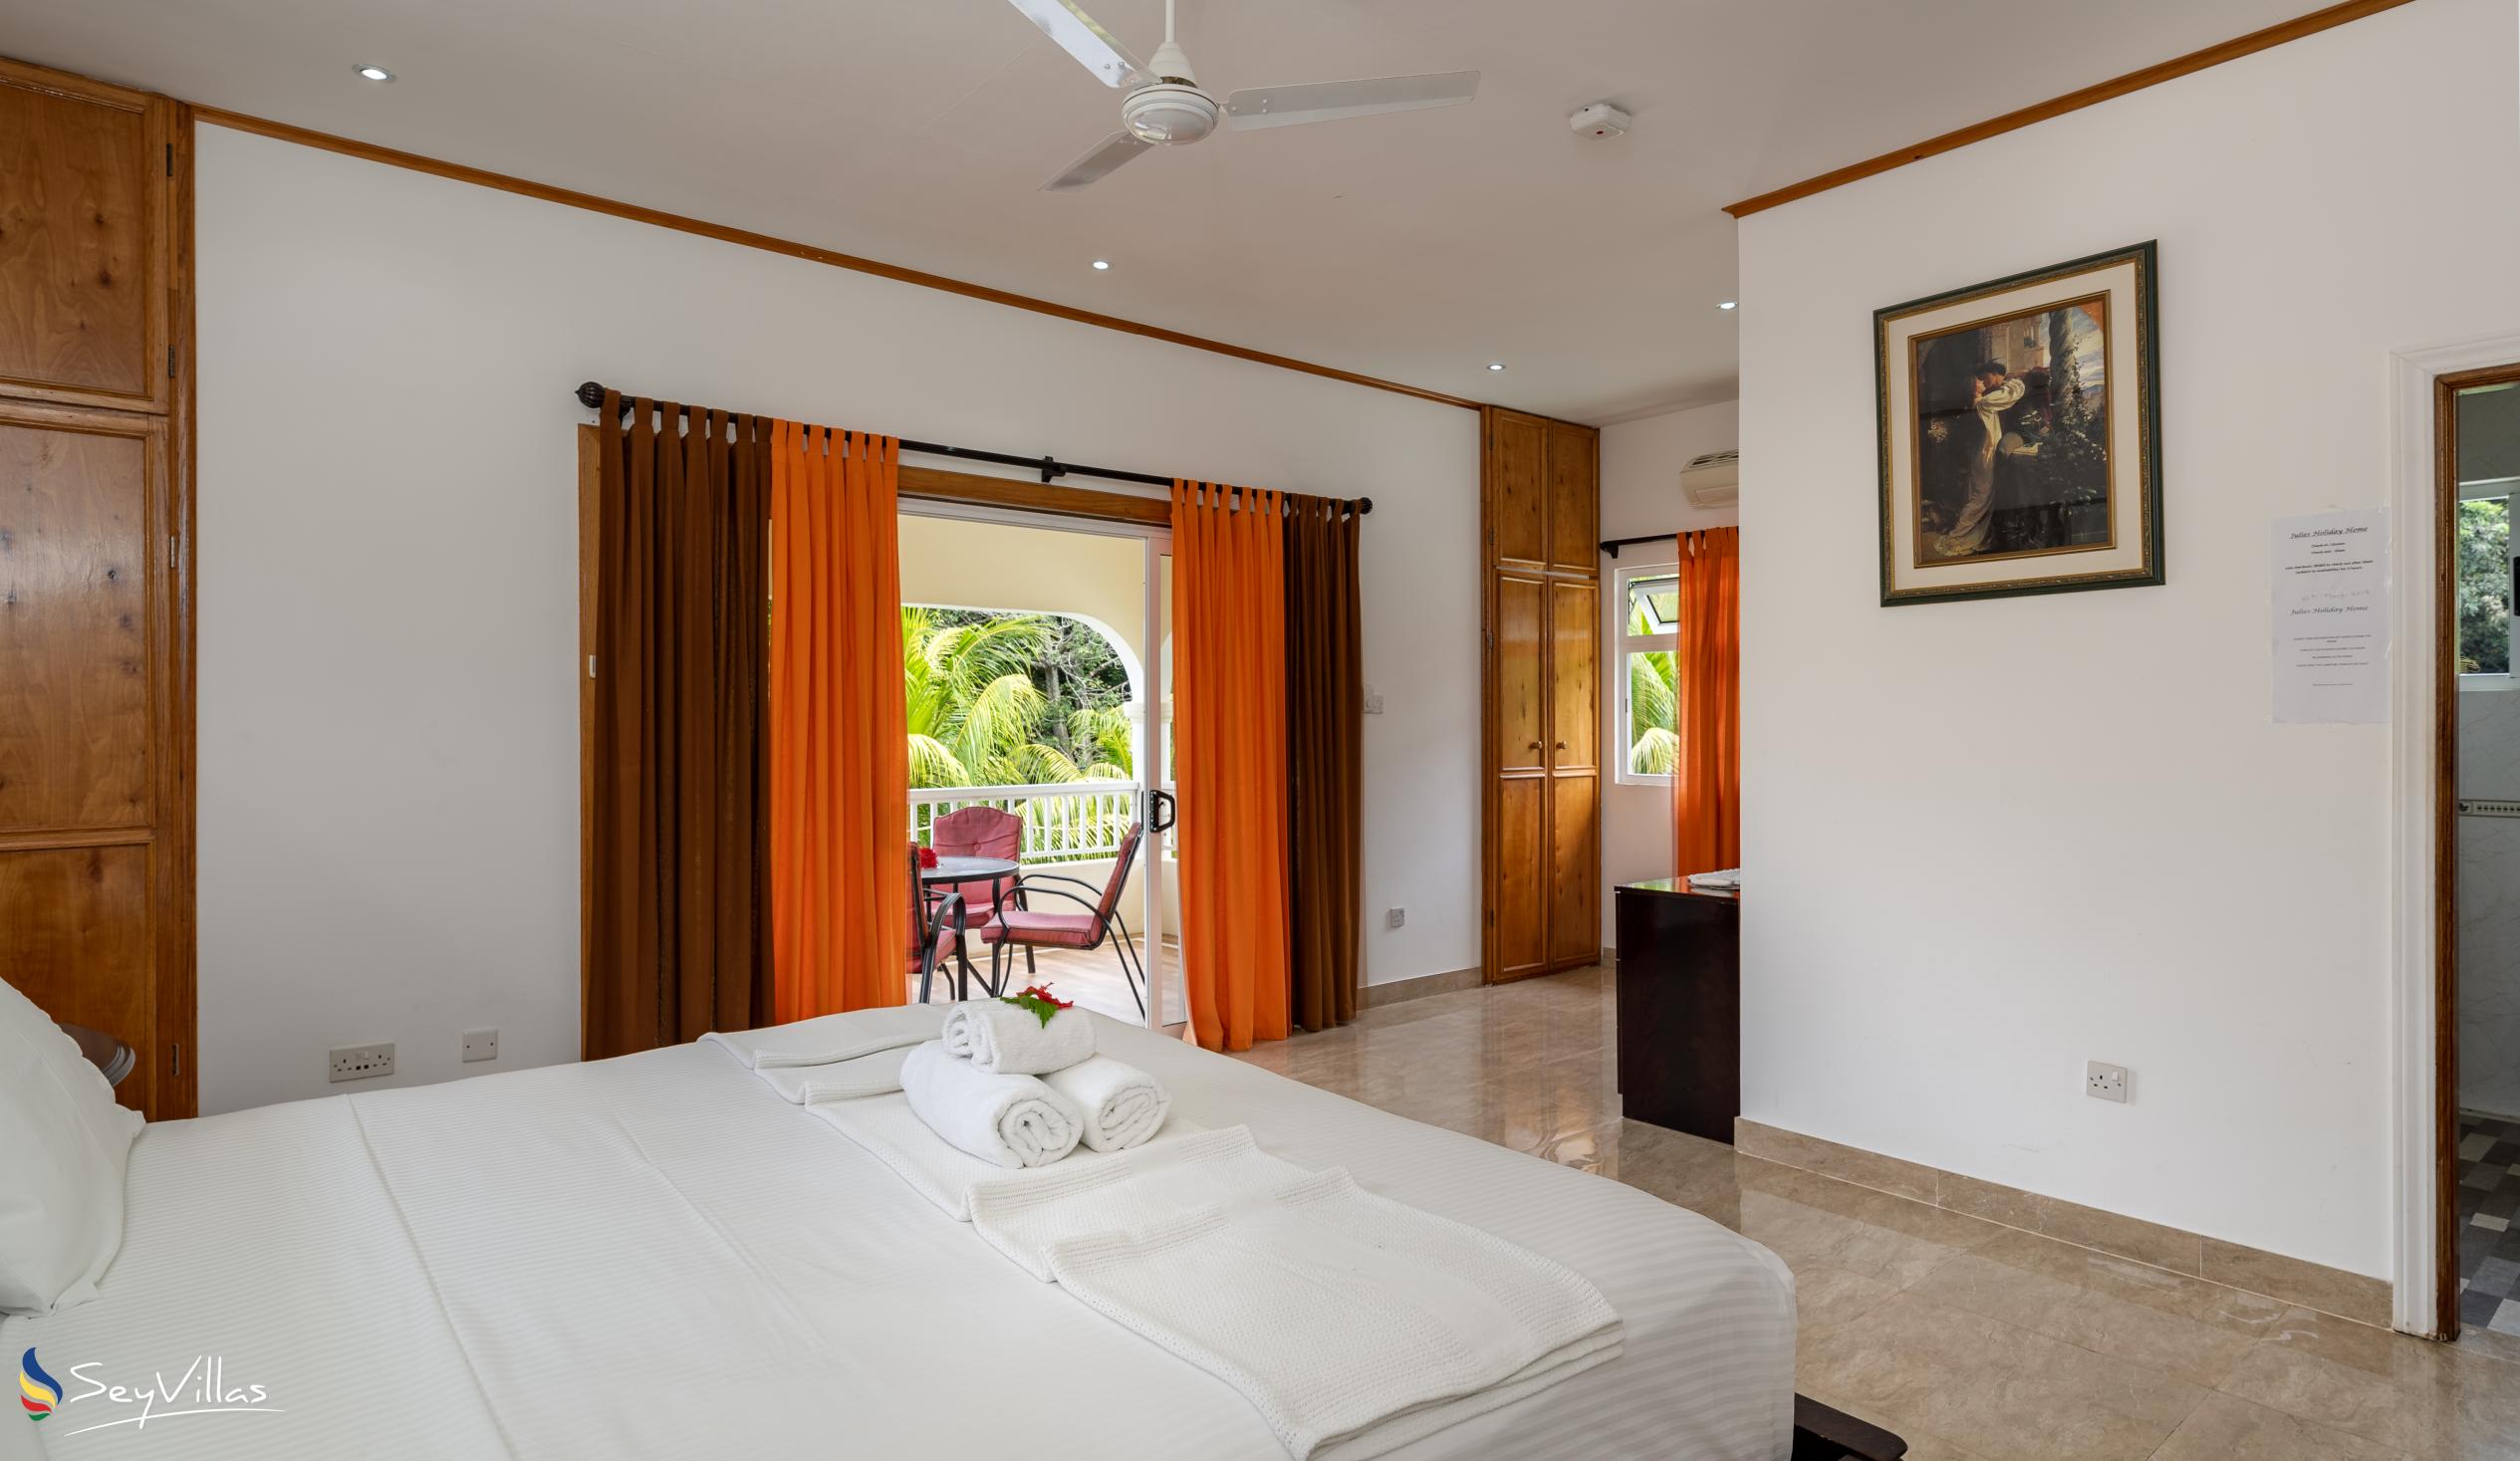 Foto 51: Julie's Holiday Home - Chambre double avec vue sur le jardin - Mahé (Seychelles)